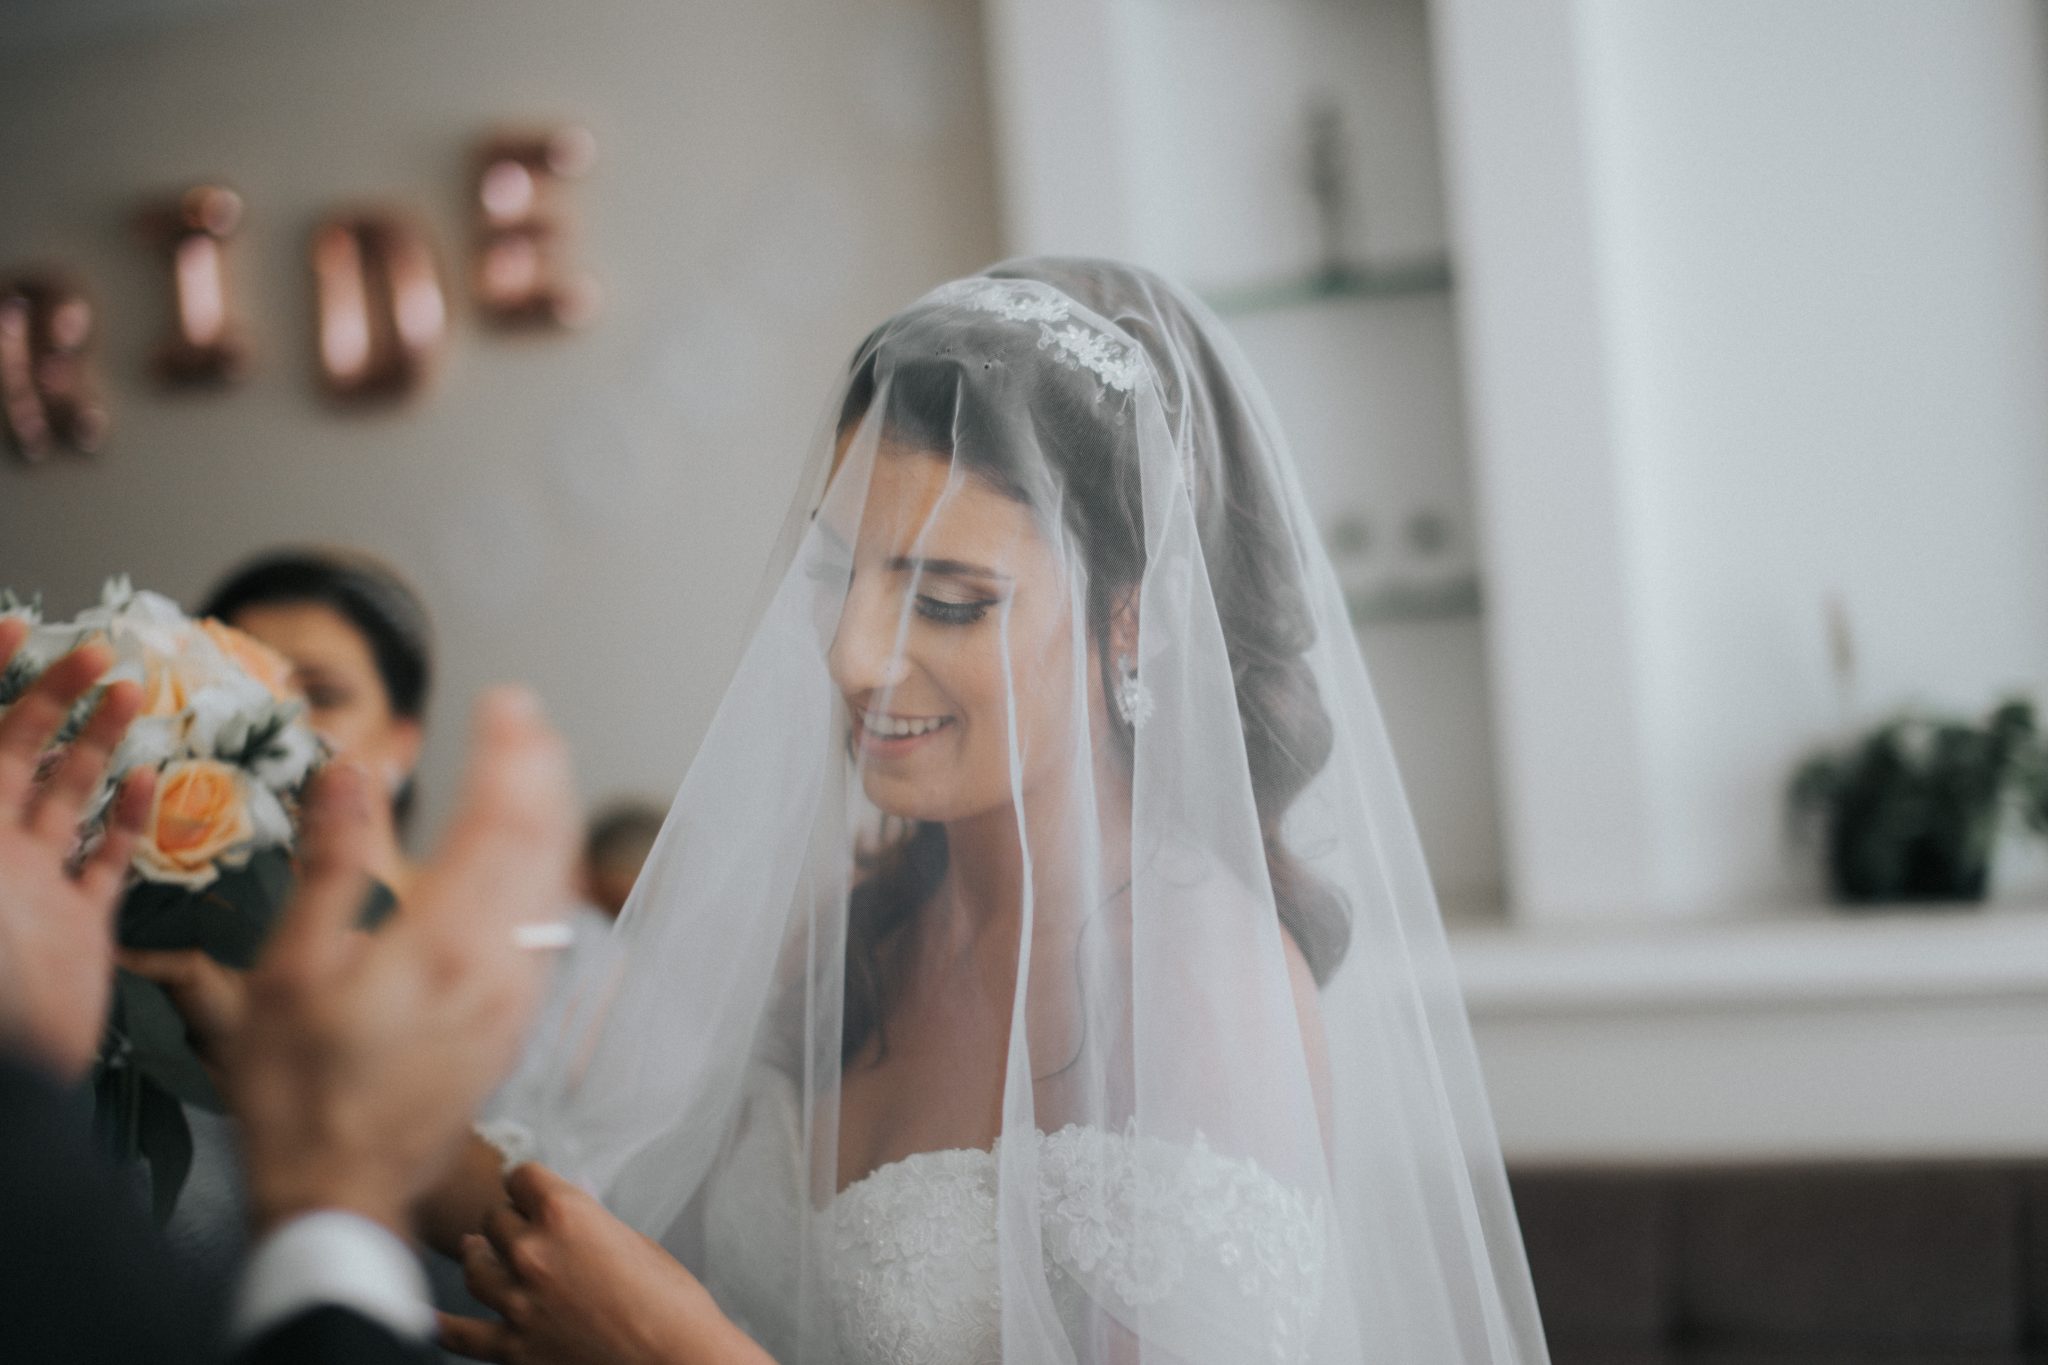 bride wearing veil at wedding venue